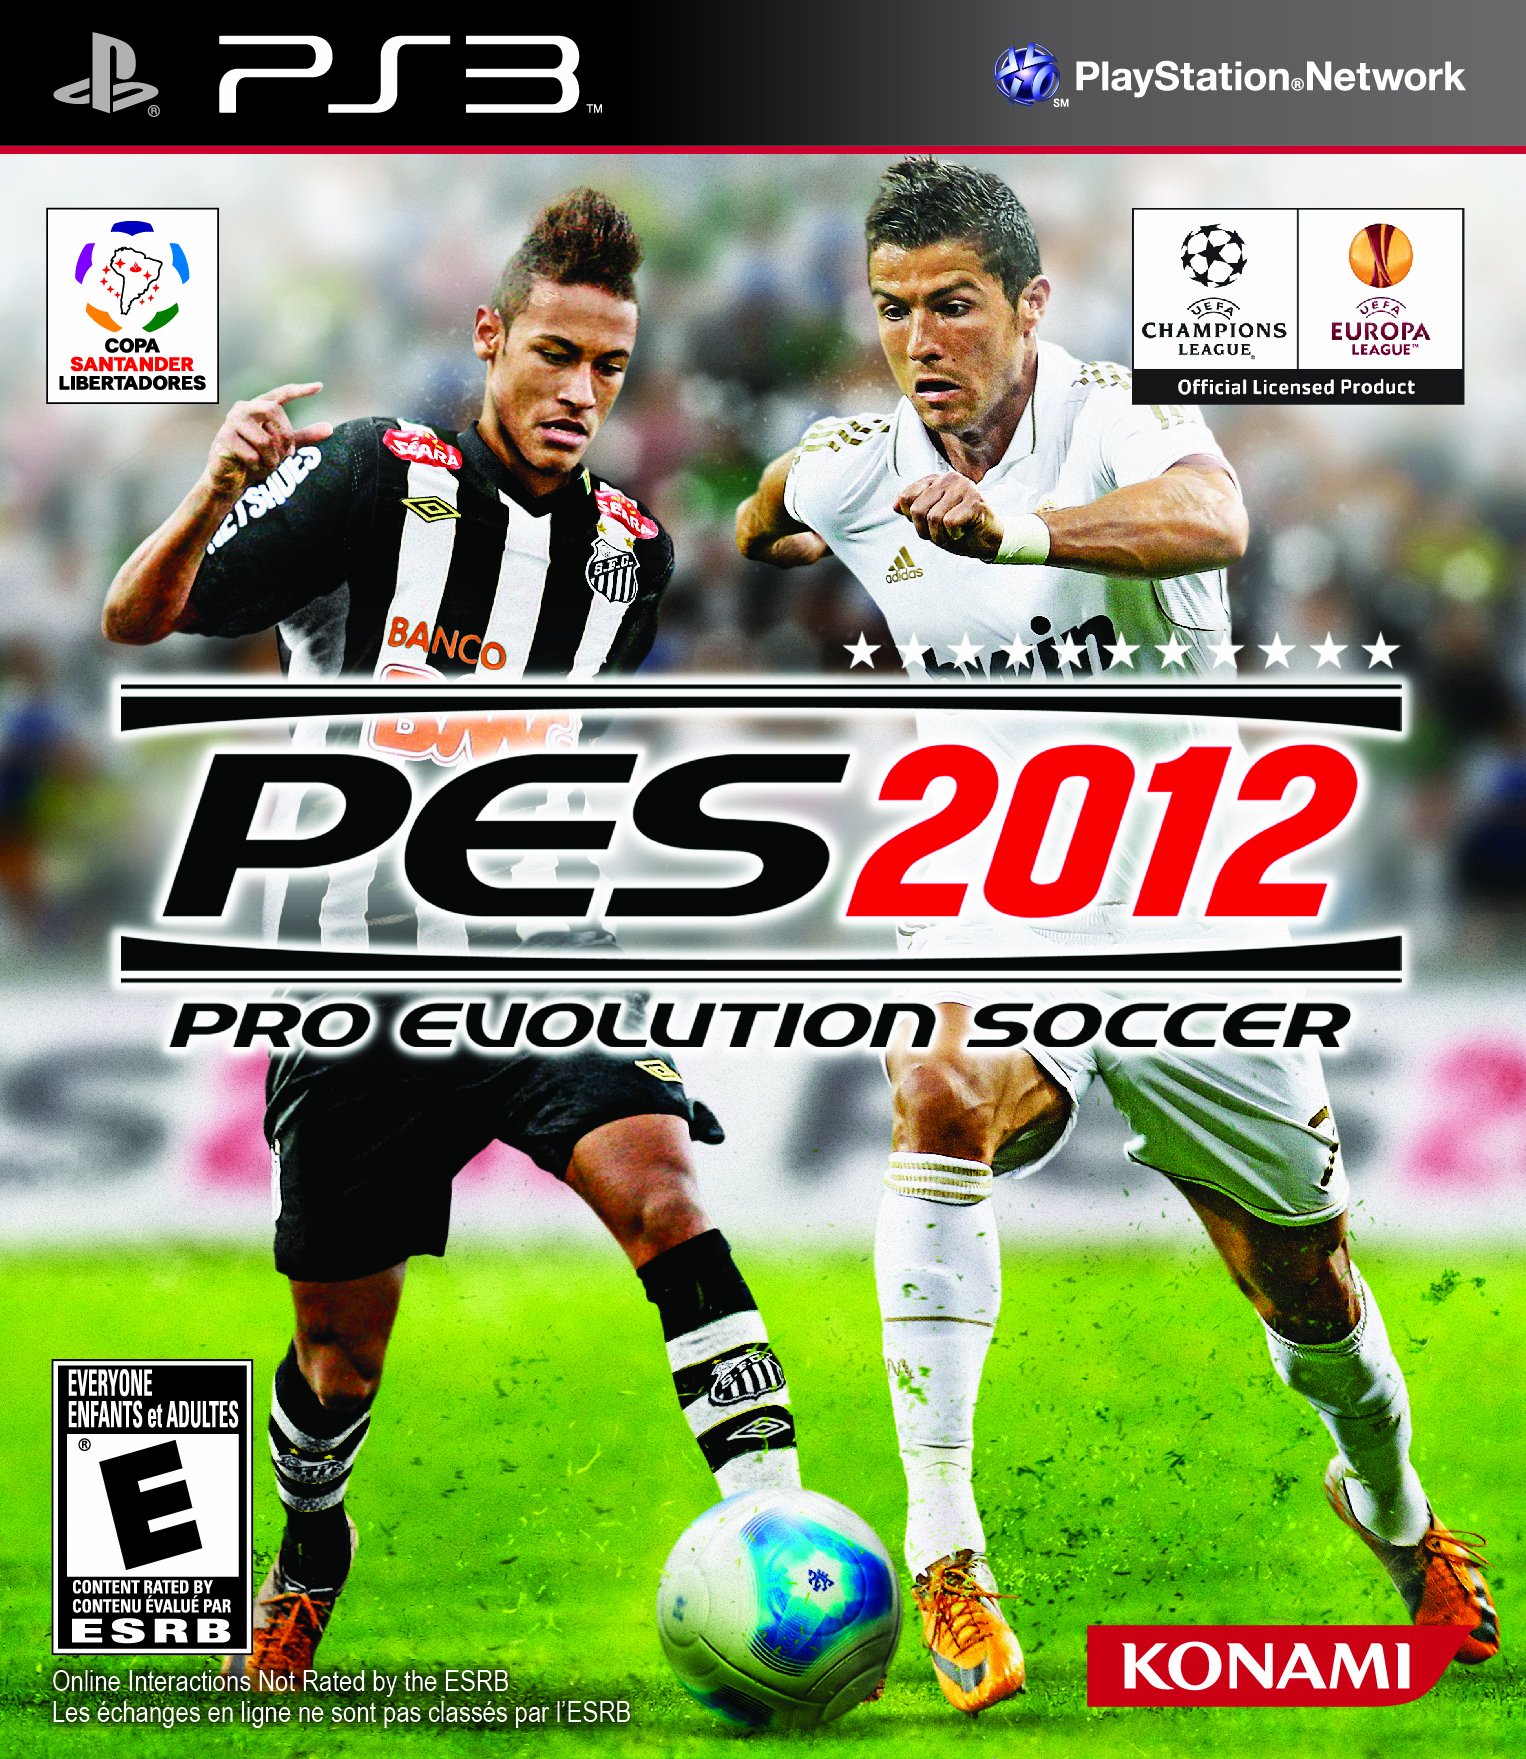 Compre agora o jogo Sports Champions para seu PlayStation 3 (PS3)! -  Seminovo, Mídia Física e Original